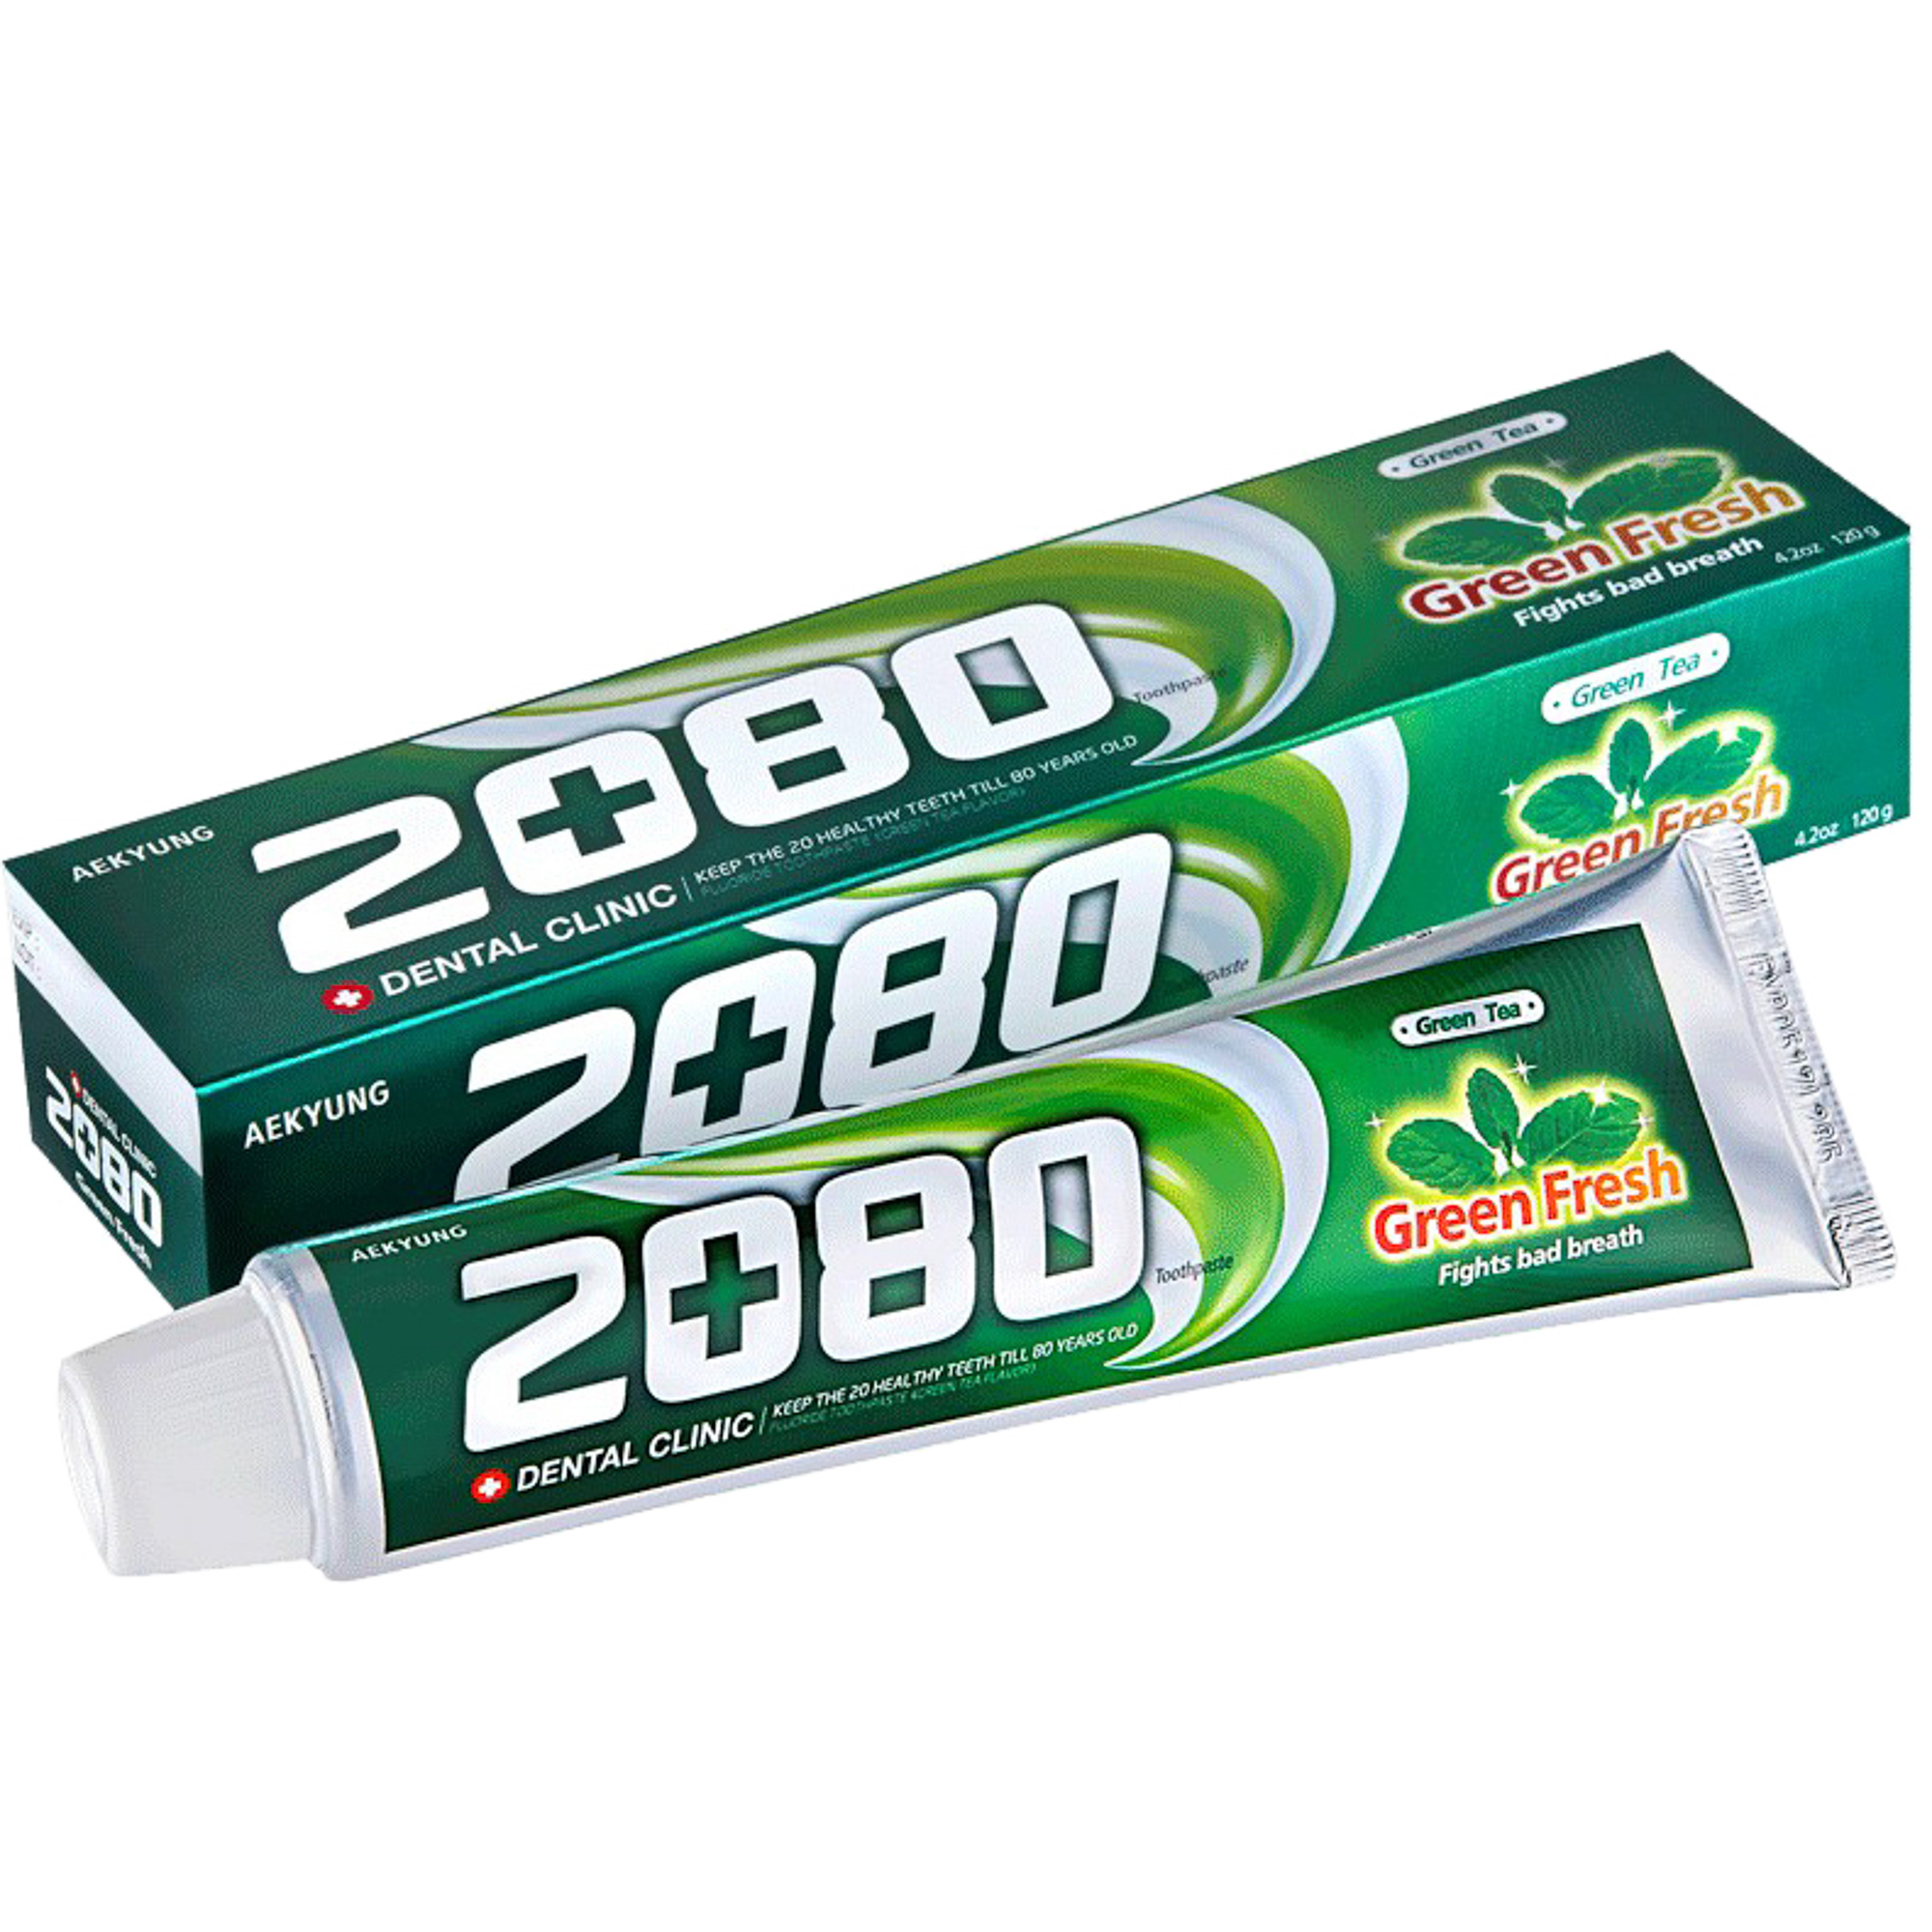 Зубная паста Kerasys Dental Clinic 2080 Green Fresh Зеленый чай 120 г паста зубная для защиты от кариеса lion fresh